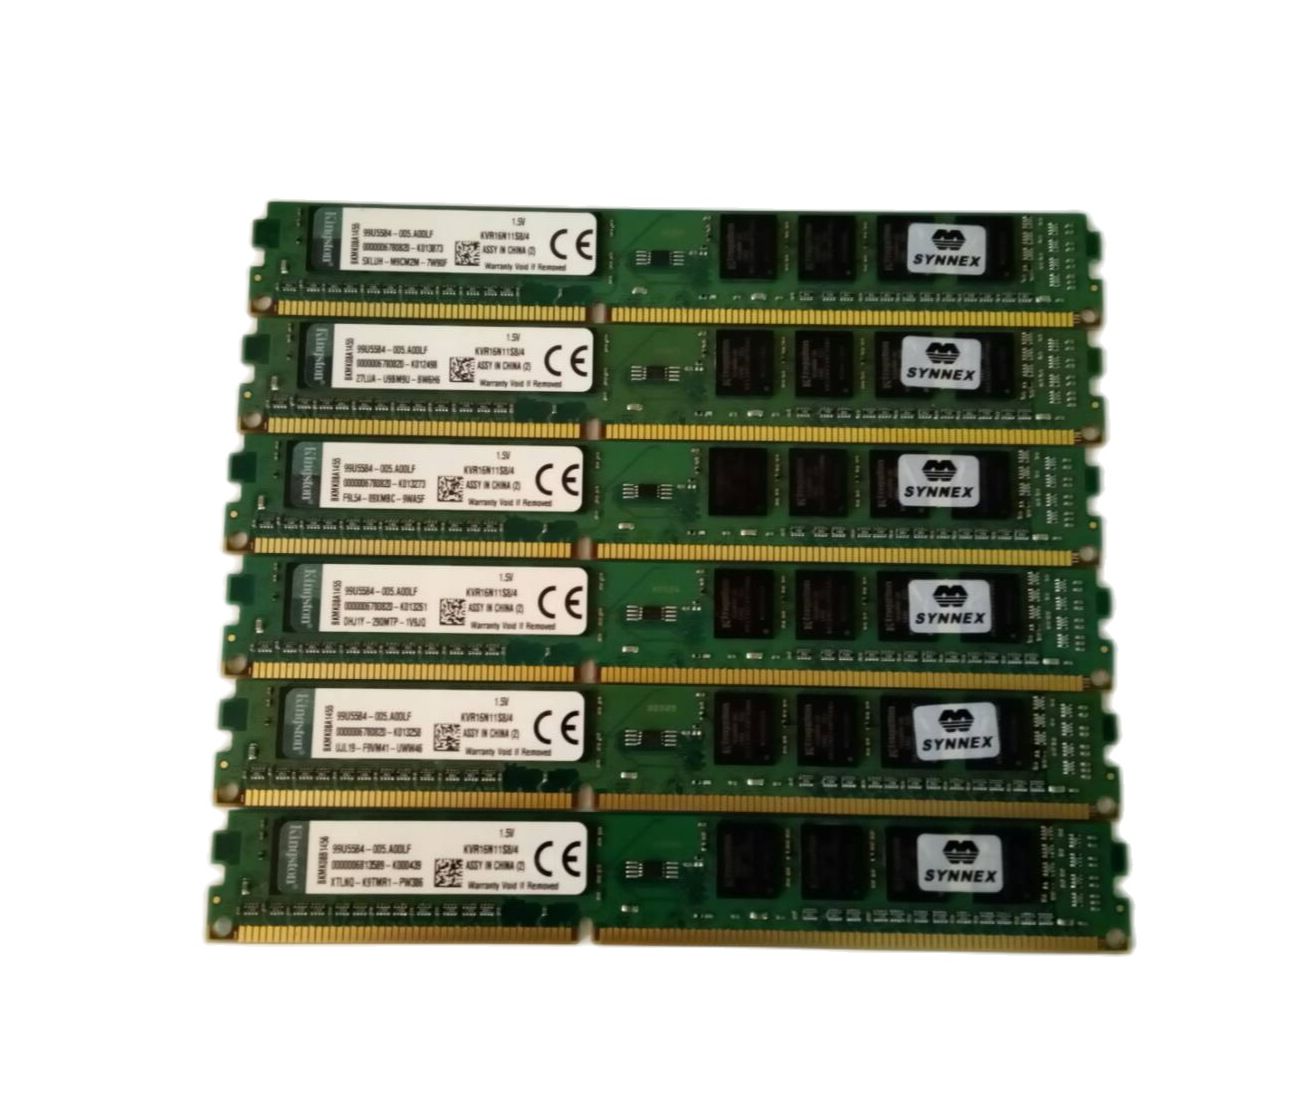 แรม Kingston RAM DDR3 บัส1600  4G  DDR3  ประกัน synnex สำหรับคอมพิวเตอร์ คุณภาพสูง พร้อมใช้งาน สภาพสวยๆใหม่ๆ ตามรูปปก ส่งไว